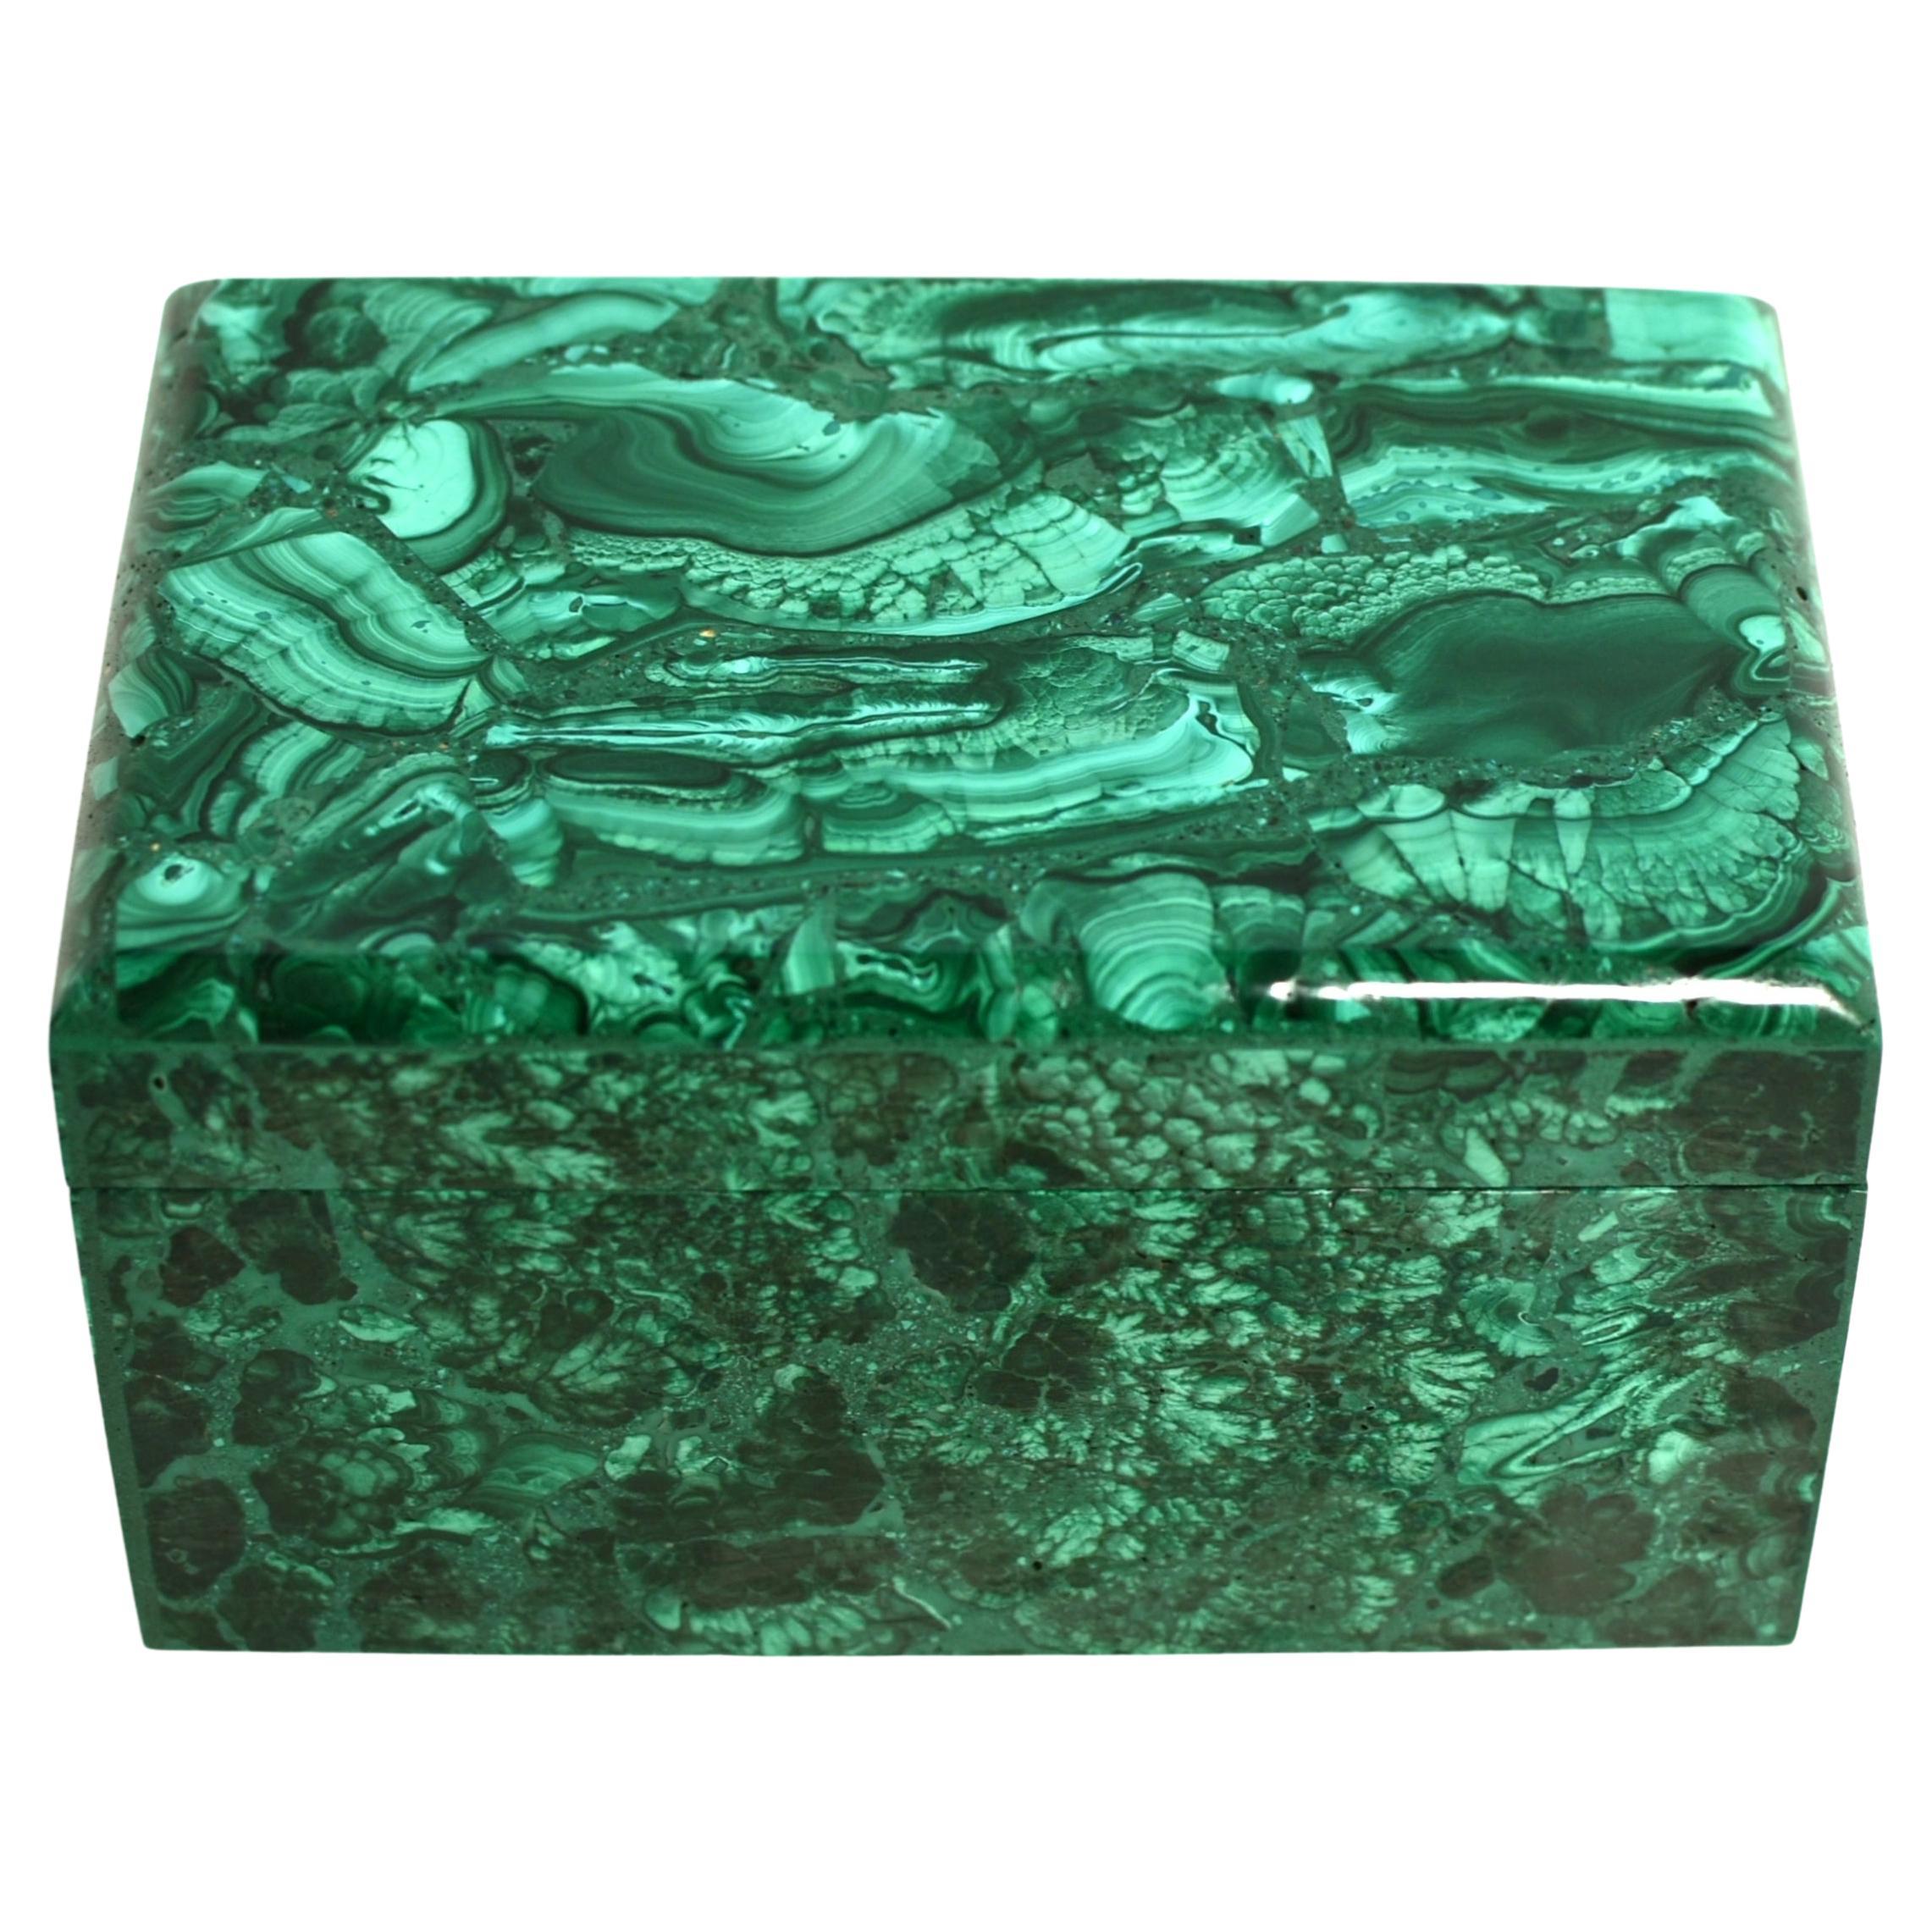 Natural Malachite Box Large 3.3 Lb Jewelry Box